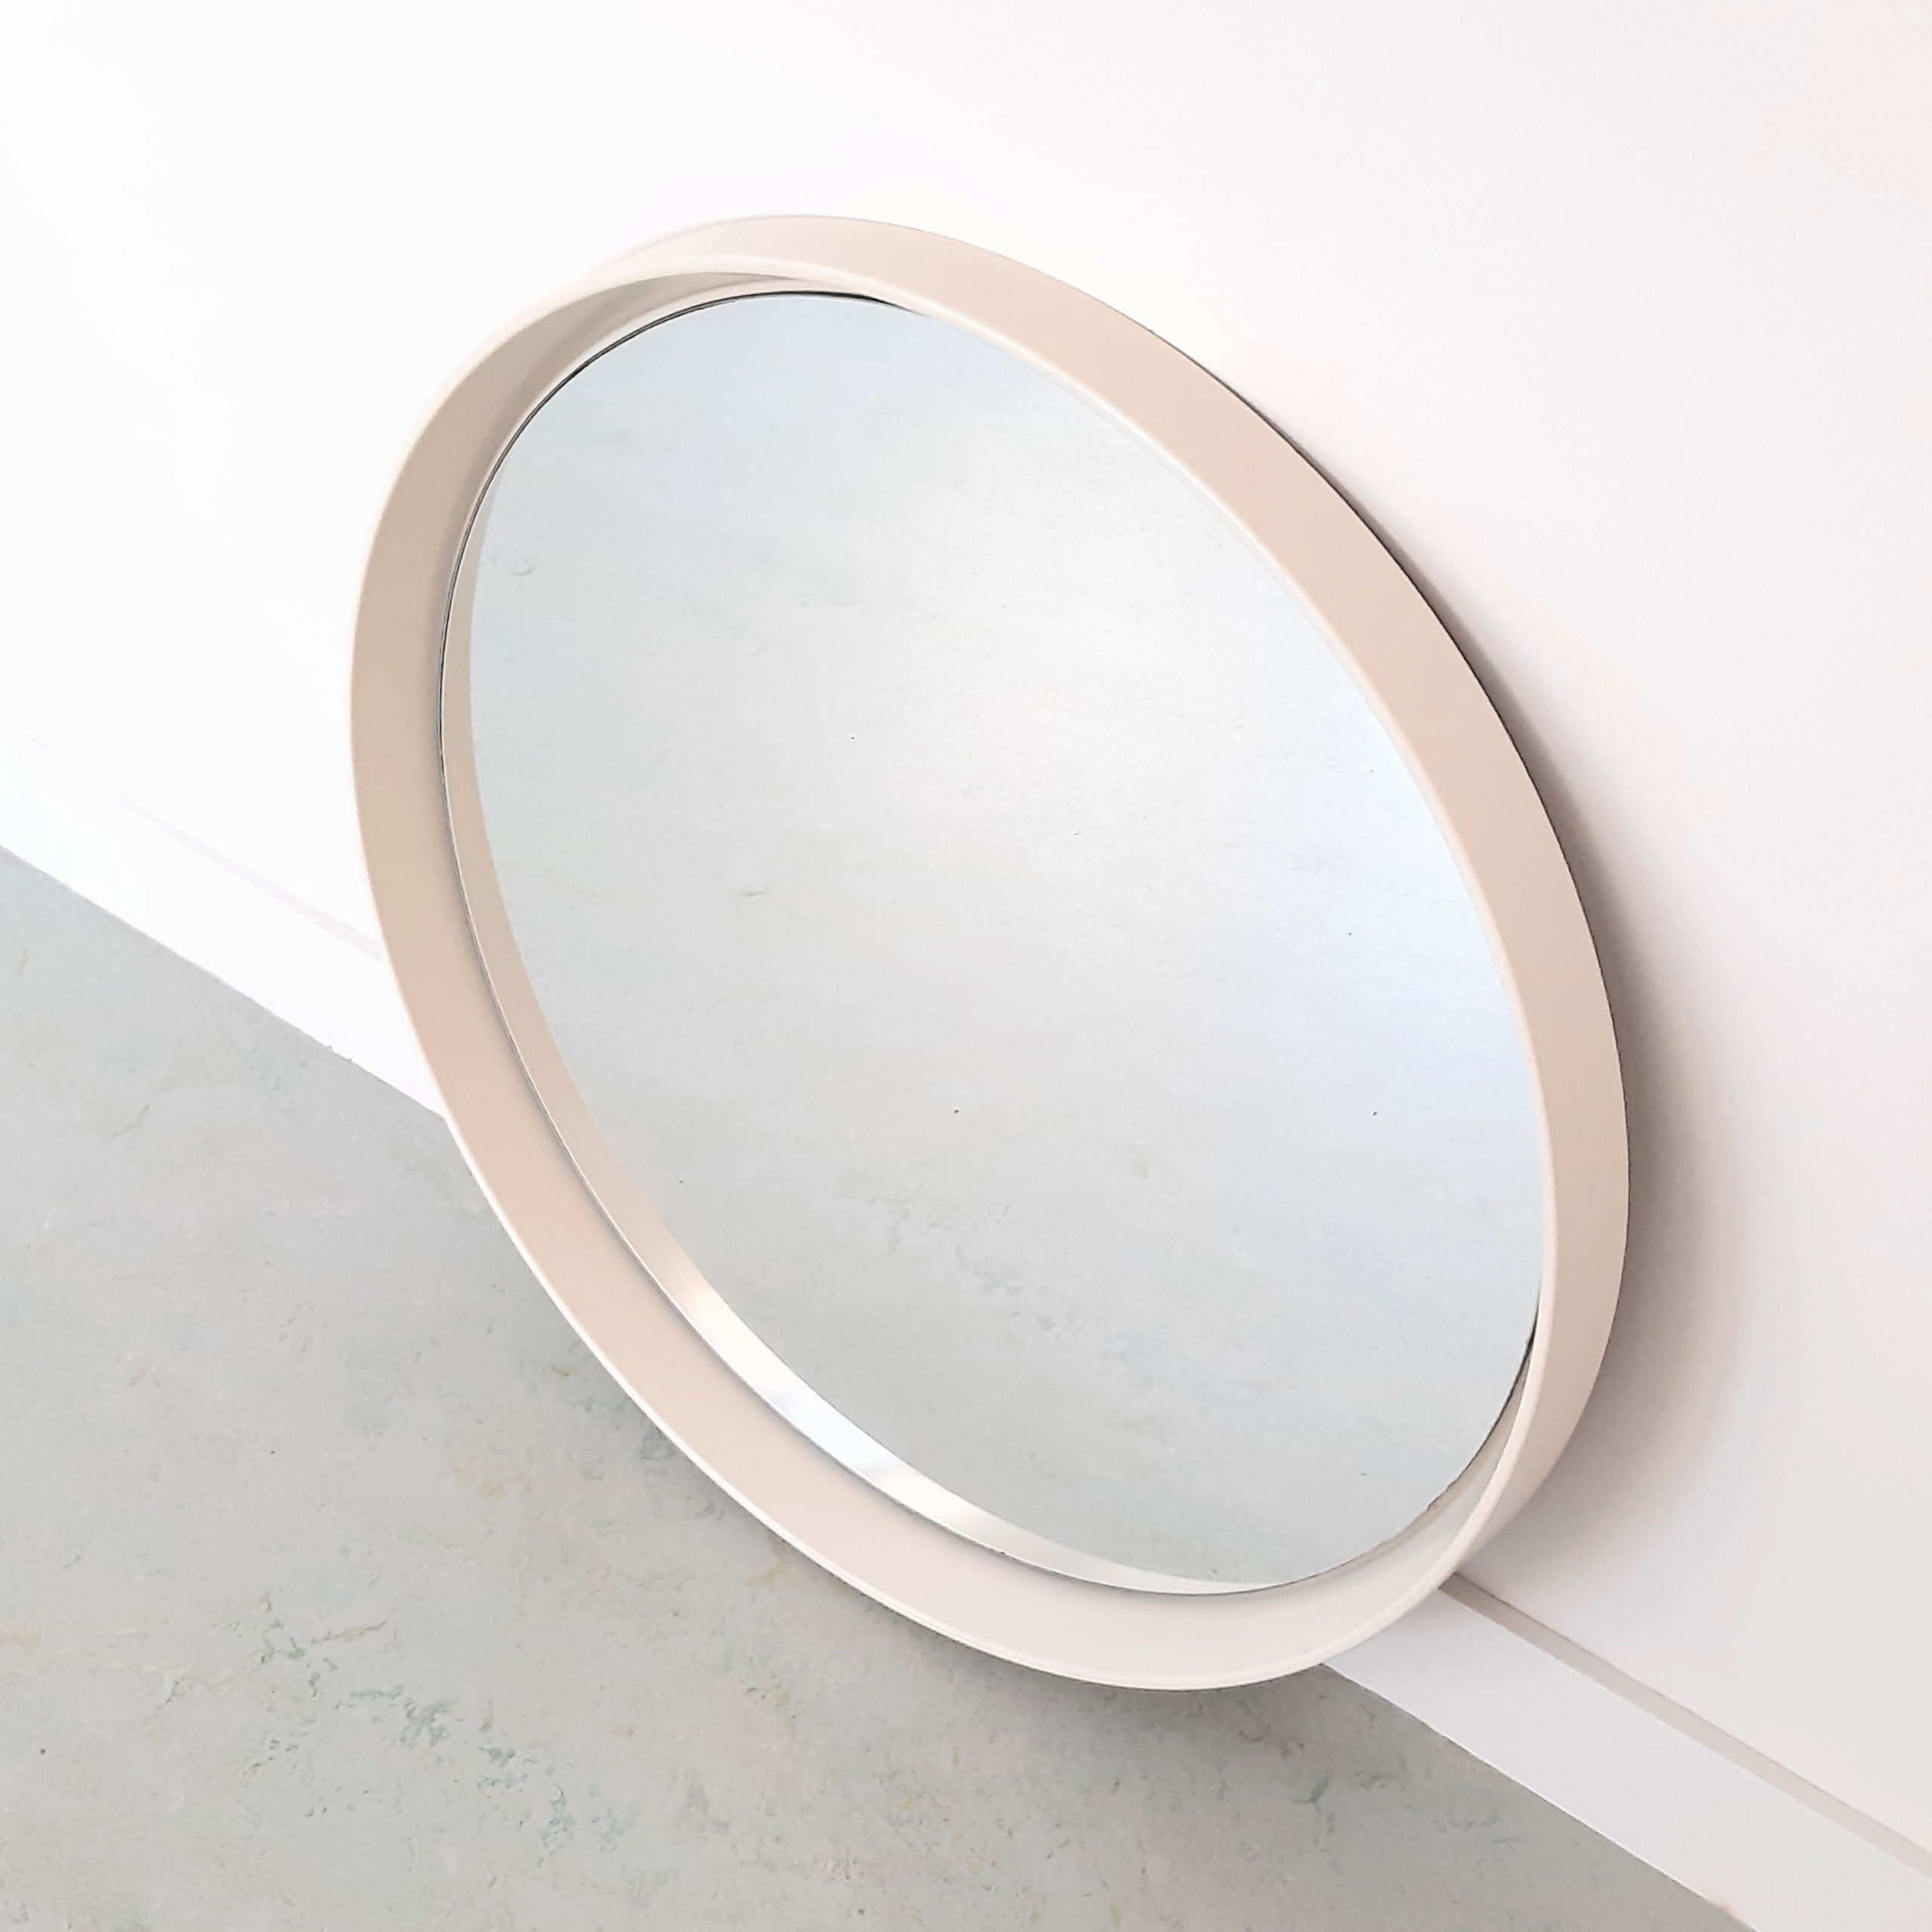 Bukken Ambitieus Secretaris TG22- Spiegel – Mirror – Made in Sweden – Ø 68 cm – Alta Design